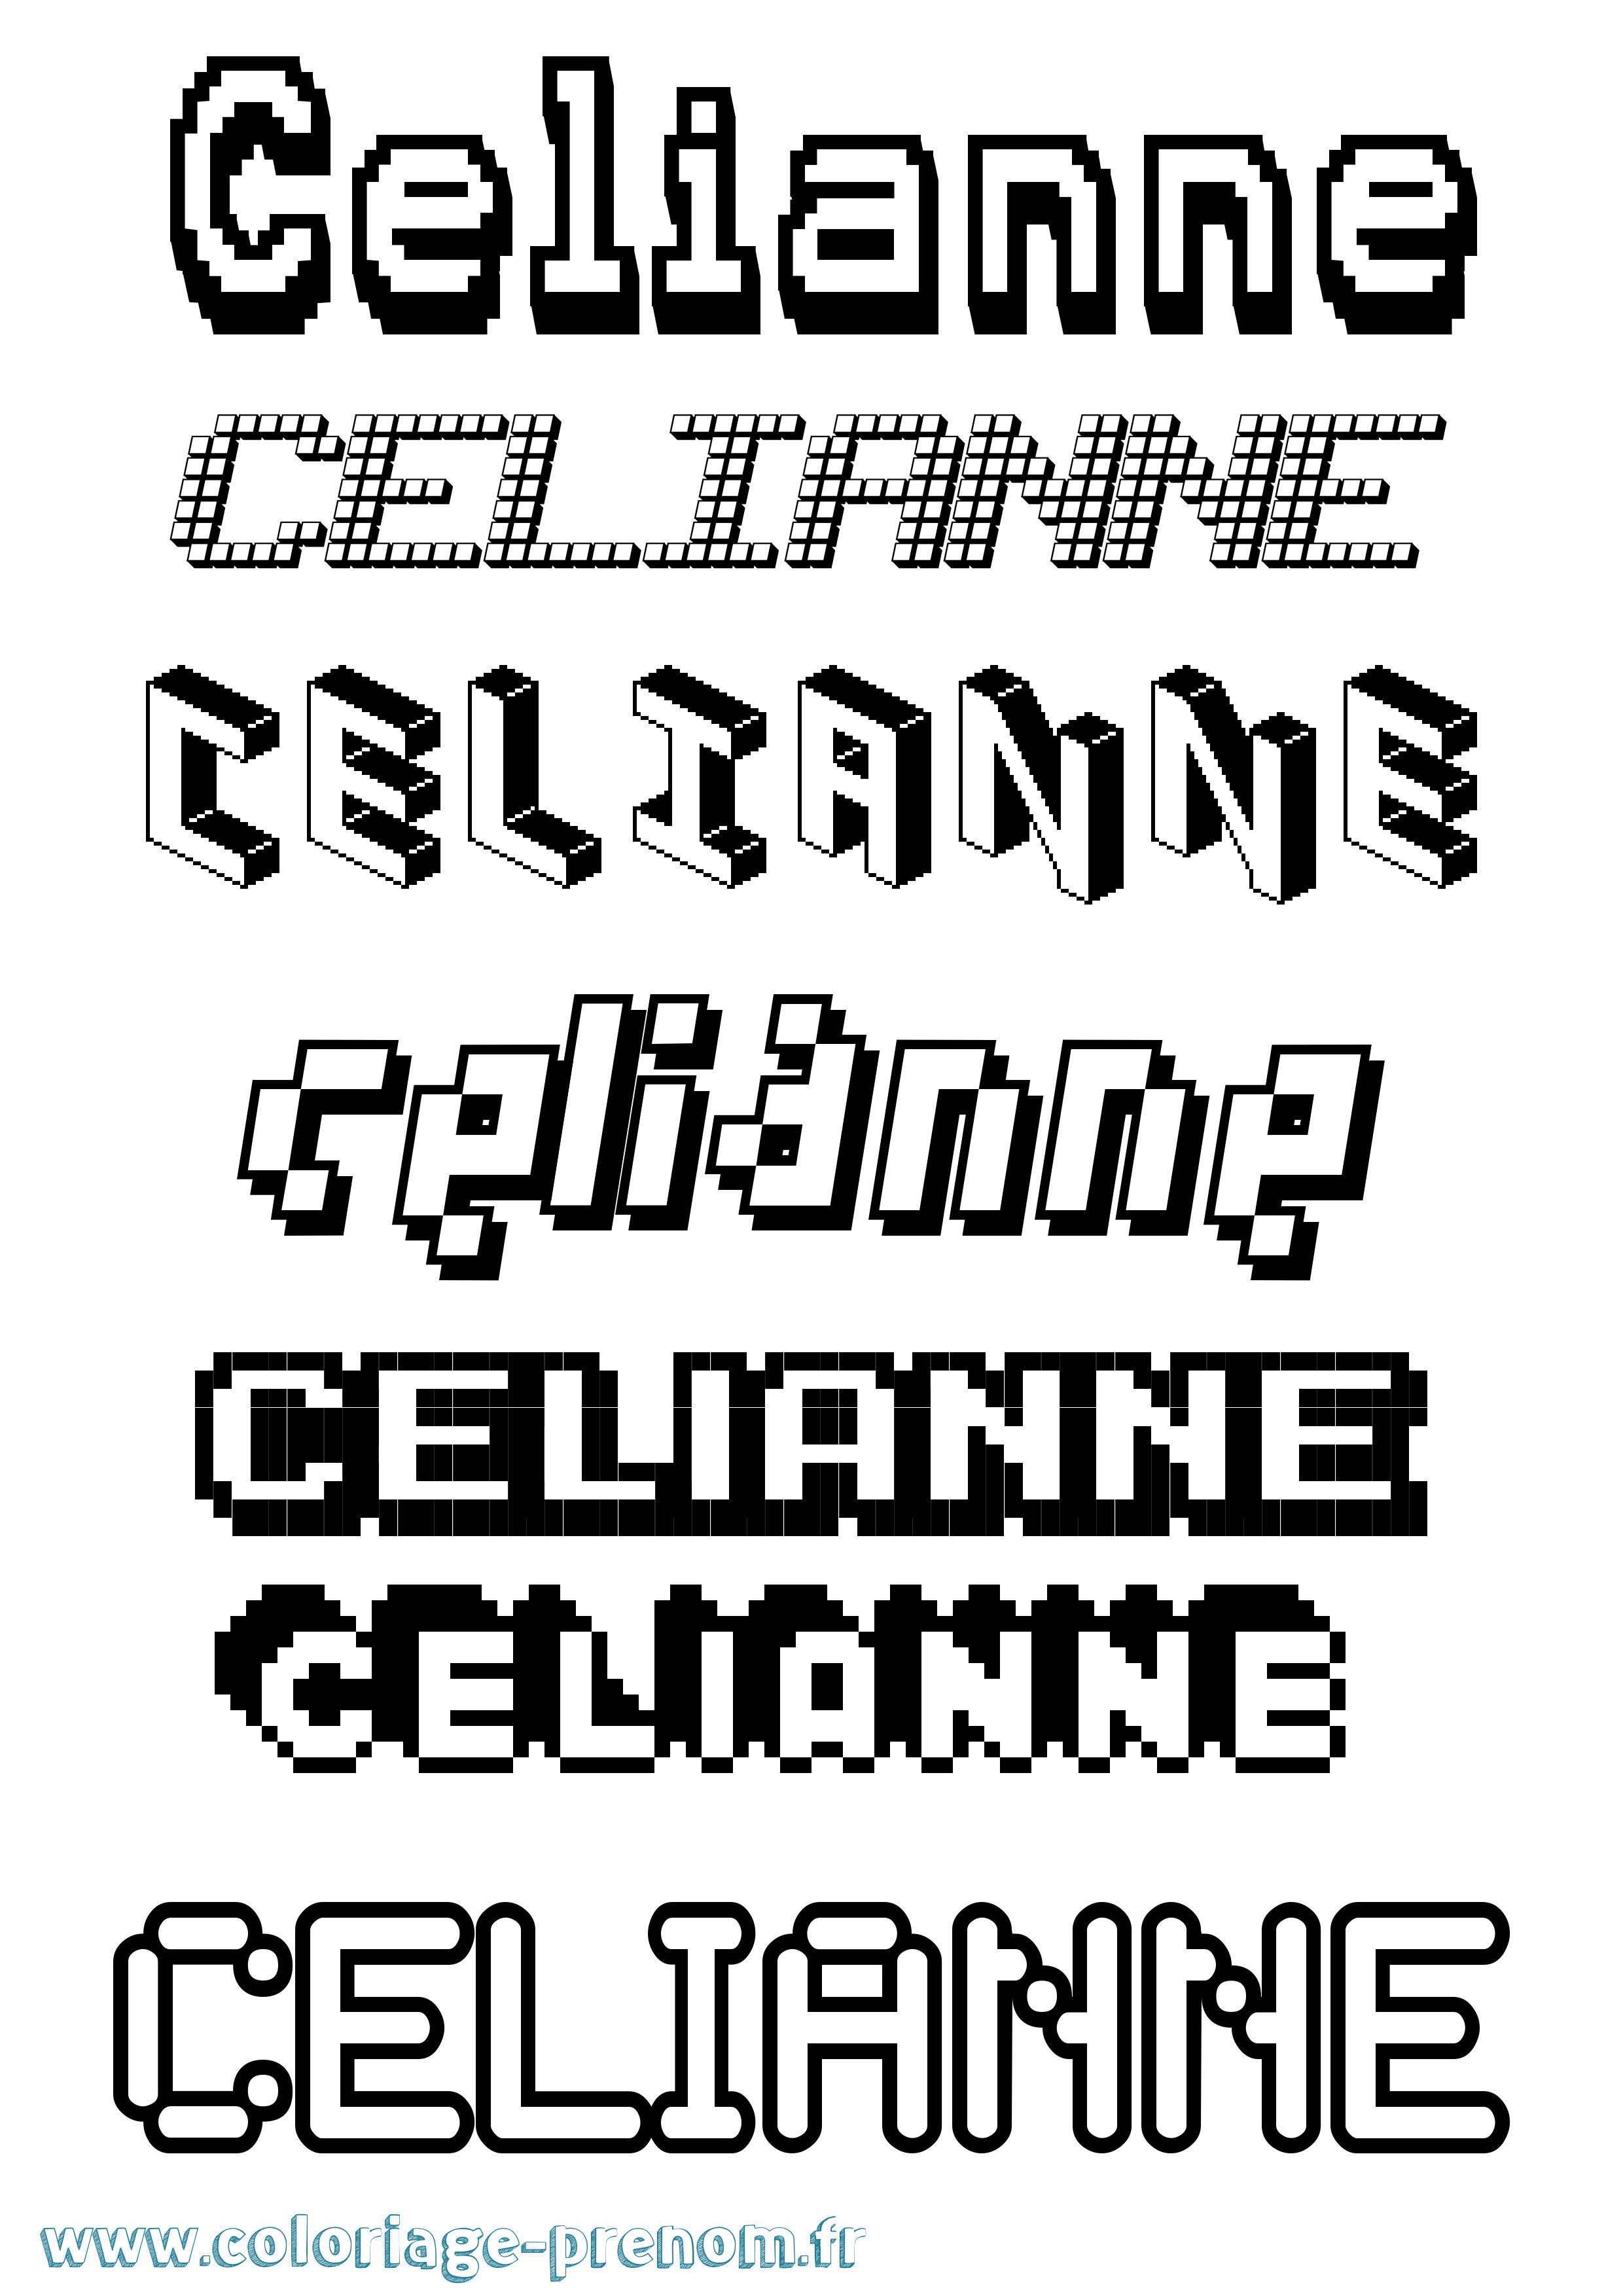 Coloriage prénom Celianne Pixel